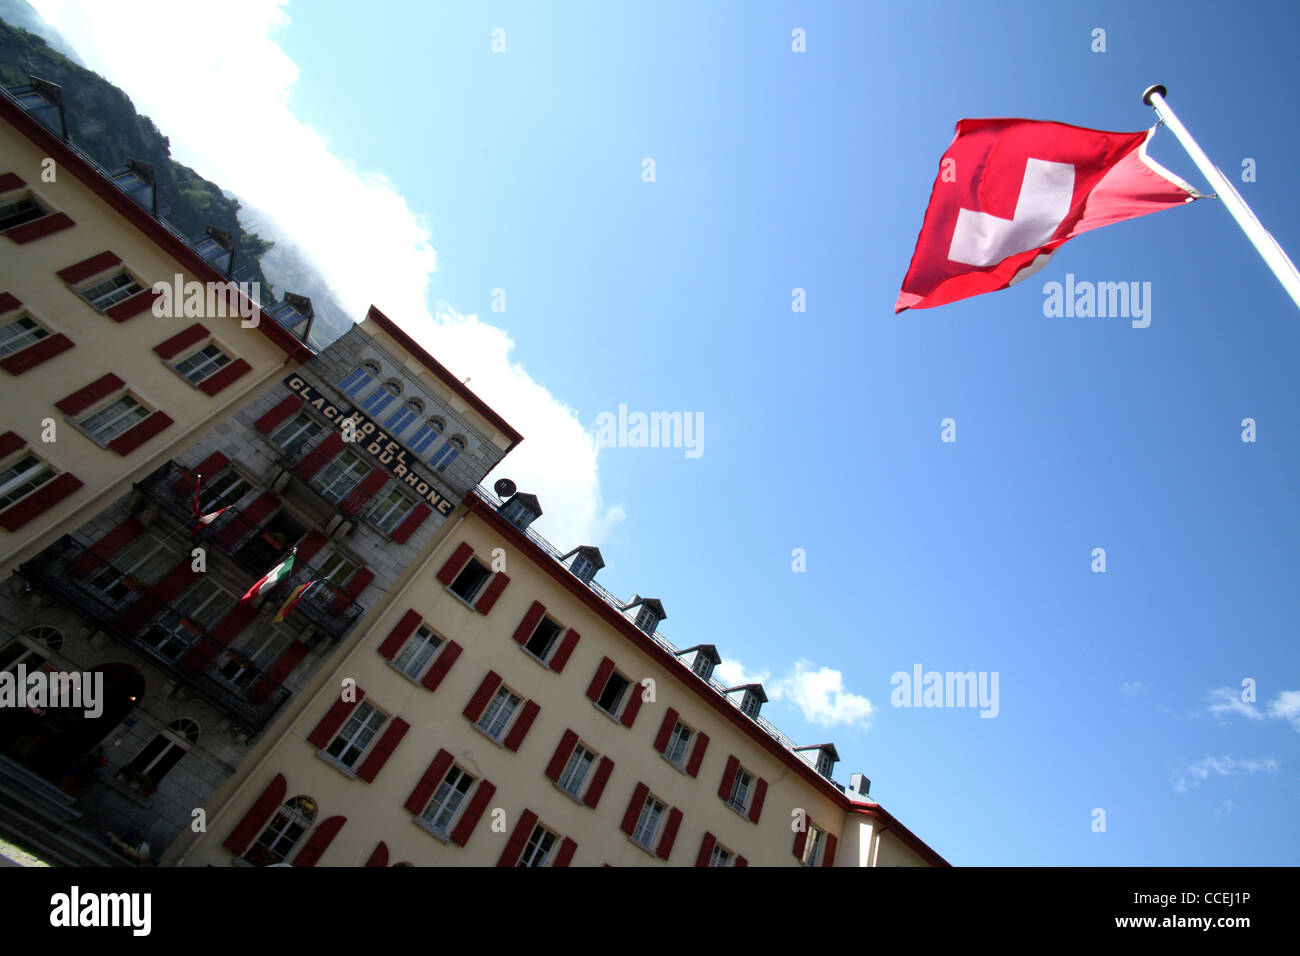 Hotel Glacier du Rhone with swiss flag in the alpine village of Gletsch, Furka, Valais, Alps, Switzerland, Europe Stock Photo